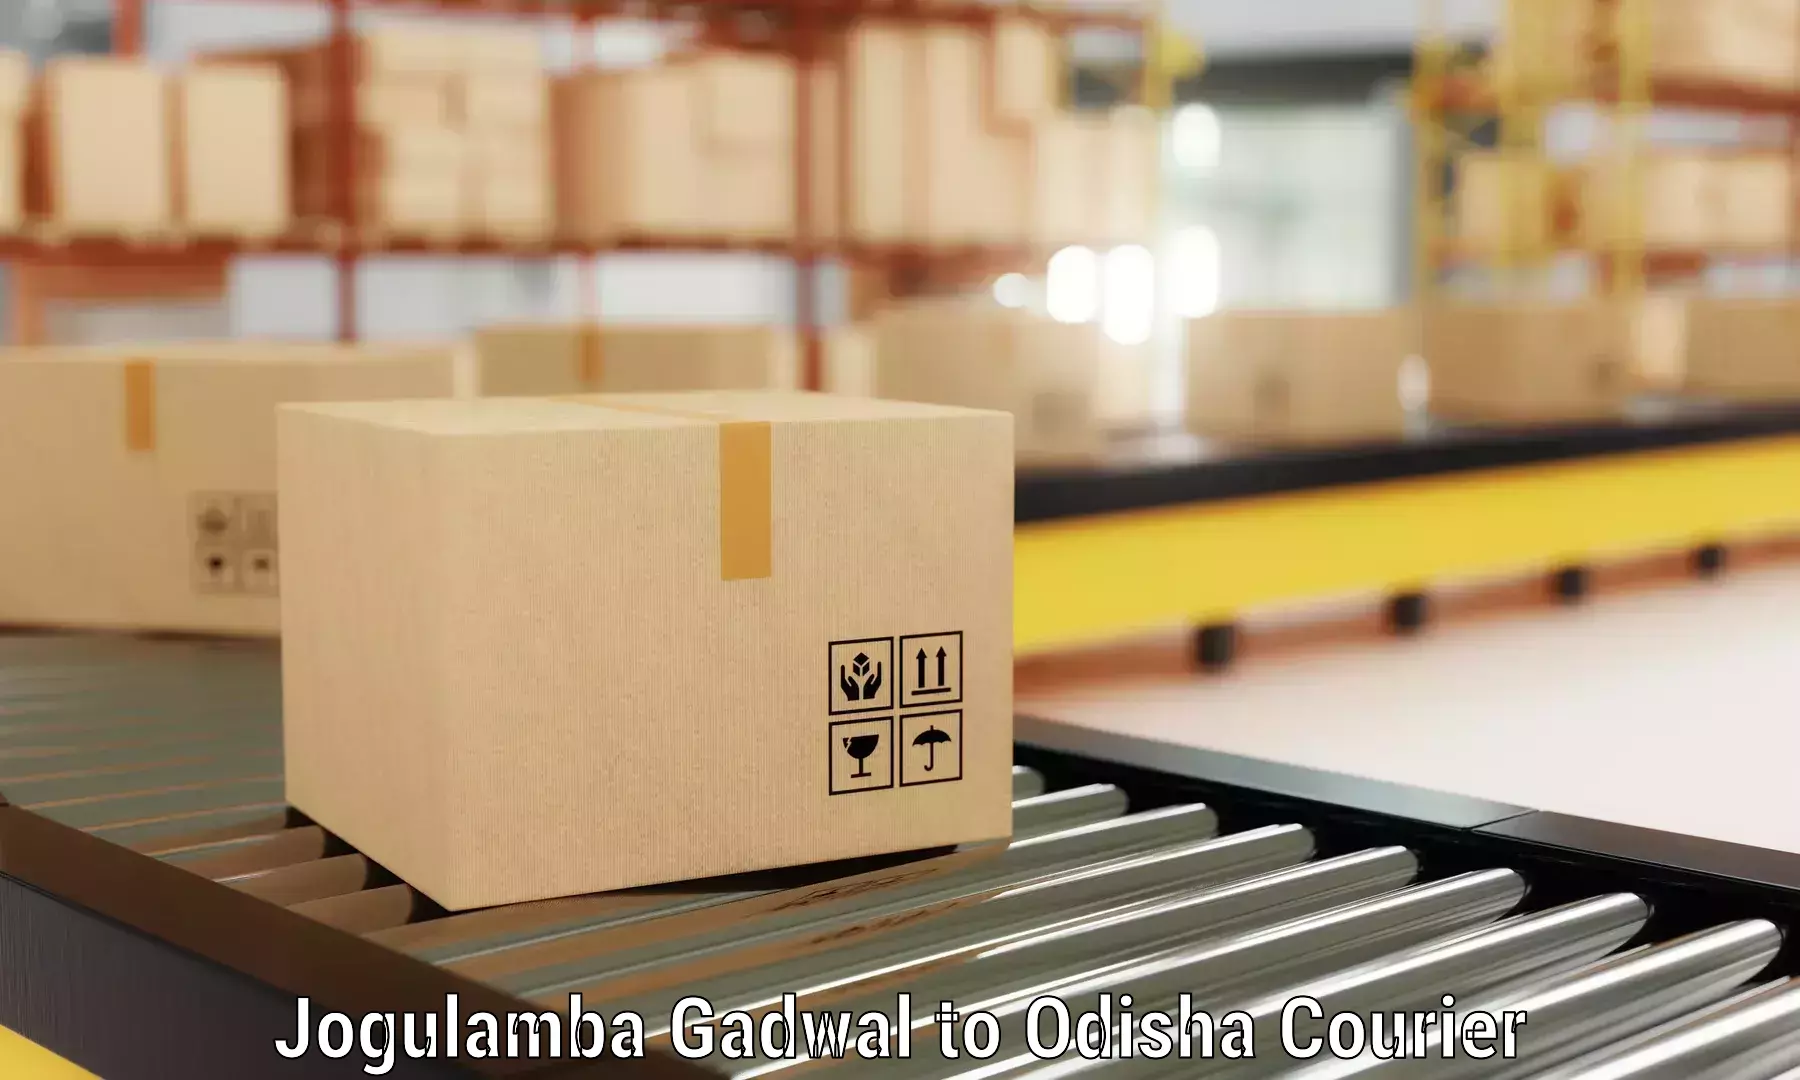 Furniture transport solutions Jogulamba Gadwal to Champua